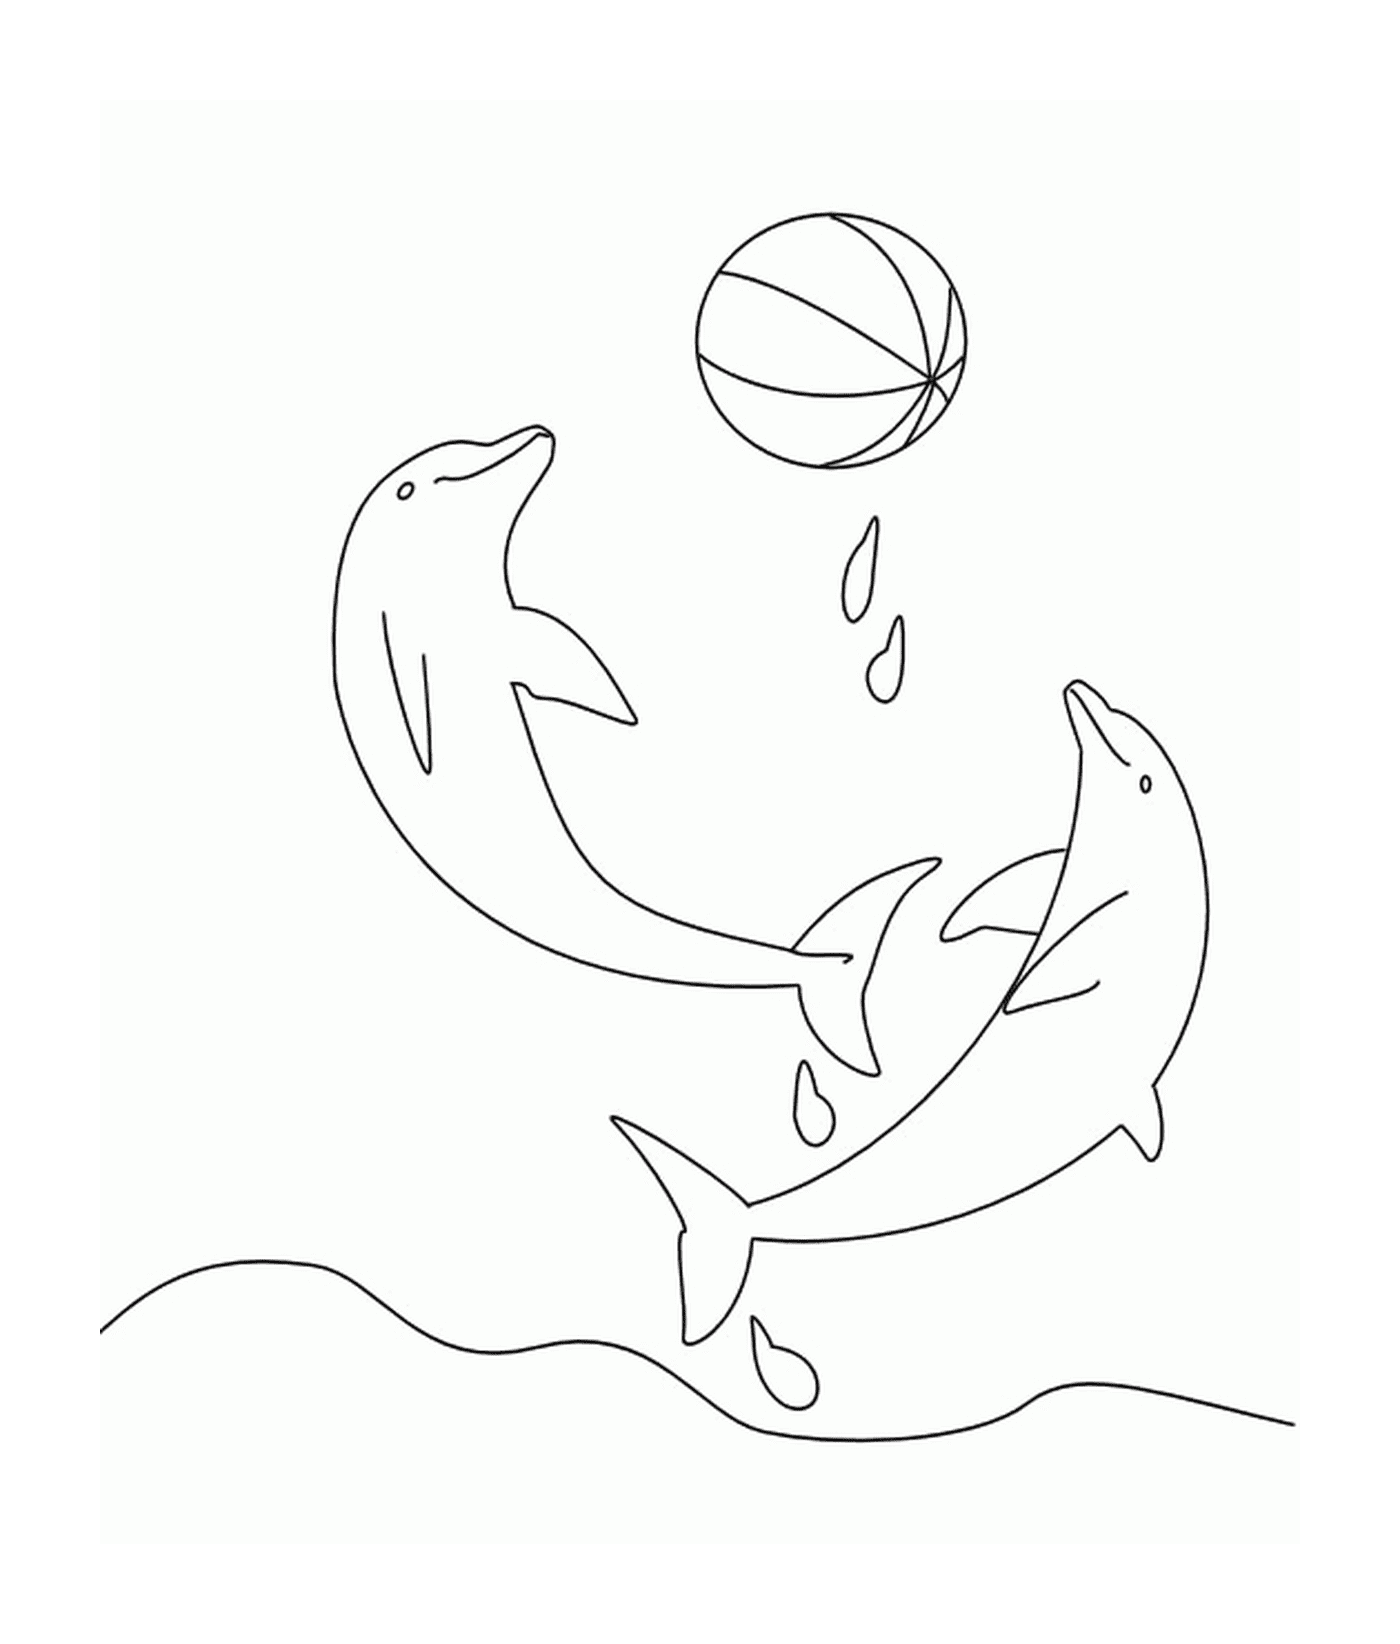  Zwei Delphine spielen mit einem Ballon 